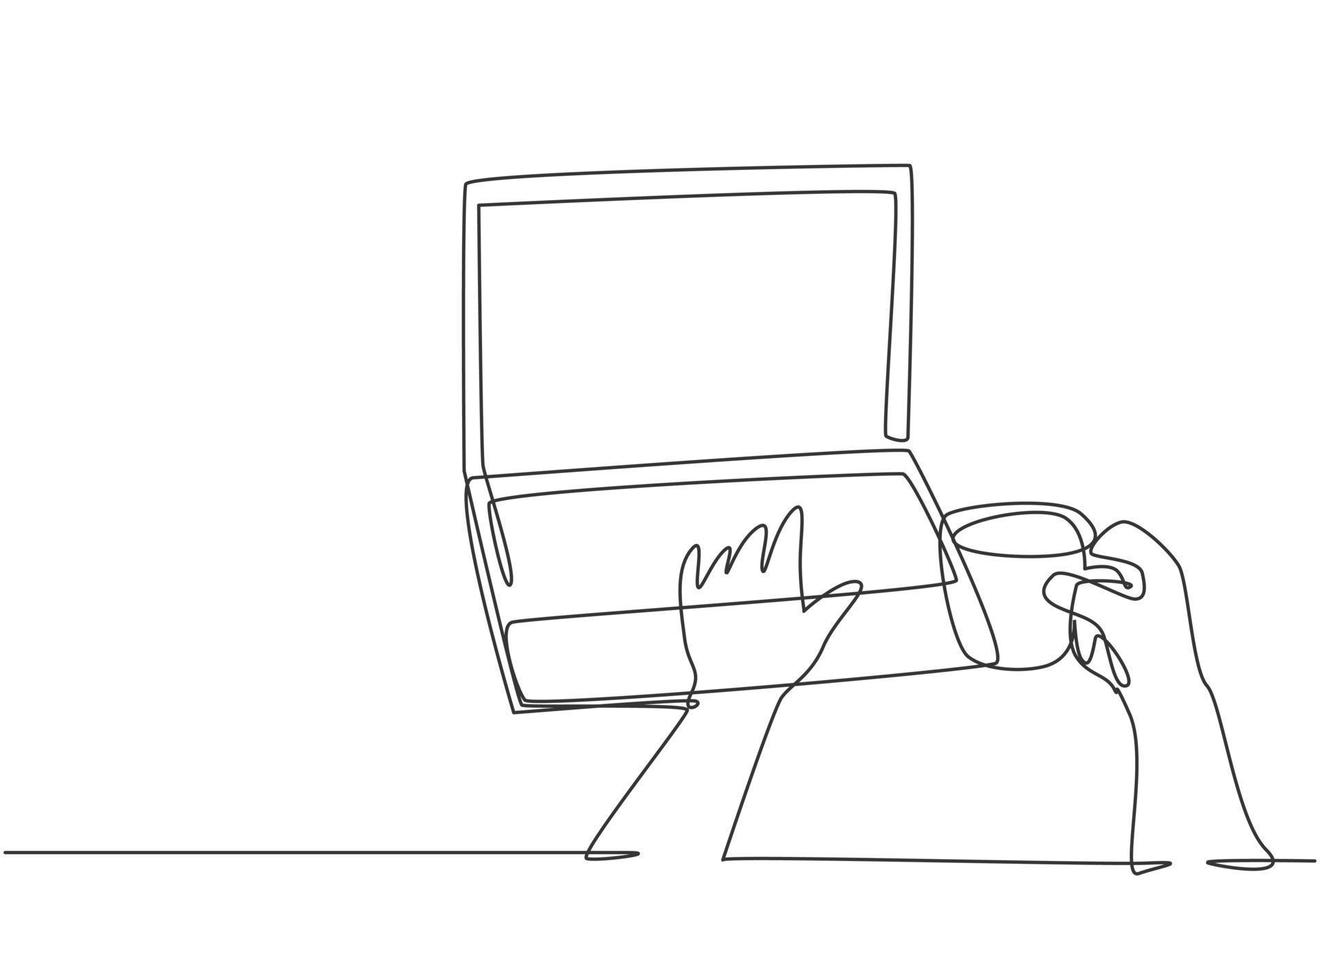 Eine durchgehende Strichzeichnung eines jungen glücklichen Arbeiters, der auf der Laptop-Tastatur tippt, um Online-Shopping zu machen, während er eine Tasse Kaffee hält. Kaffee oder Tee trinken Konzept Grafikdesign Vektor-Illustration vektor